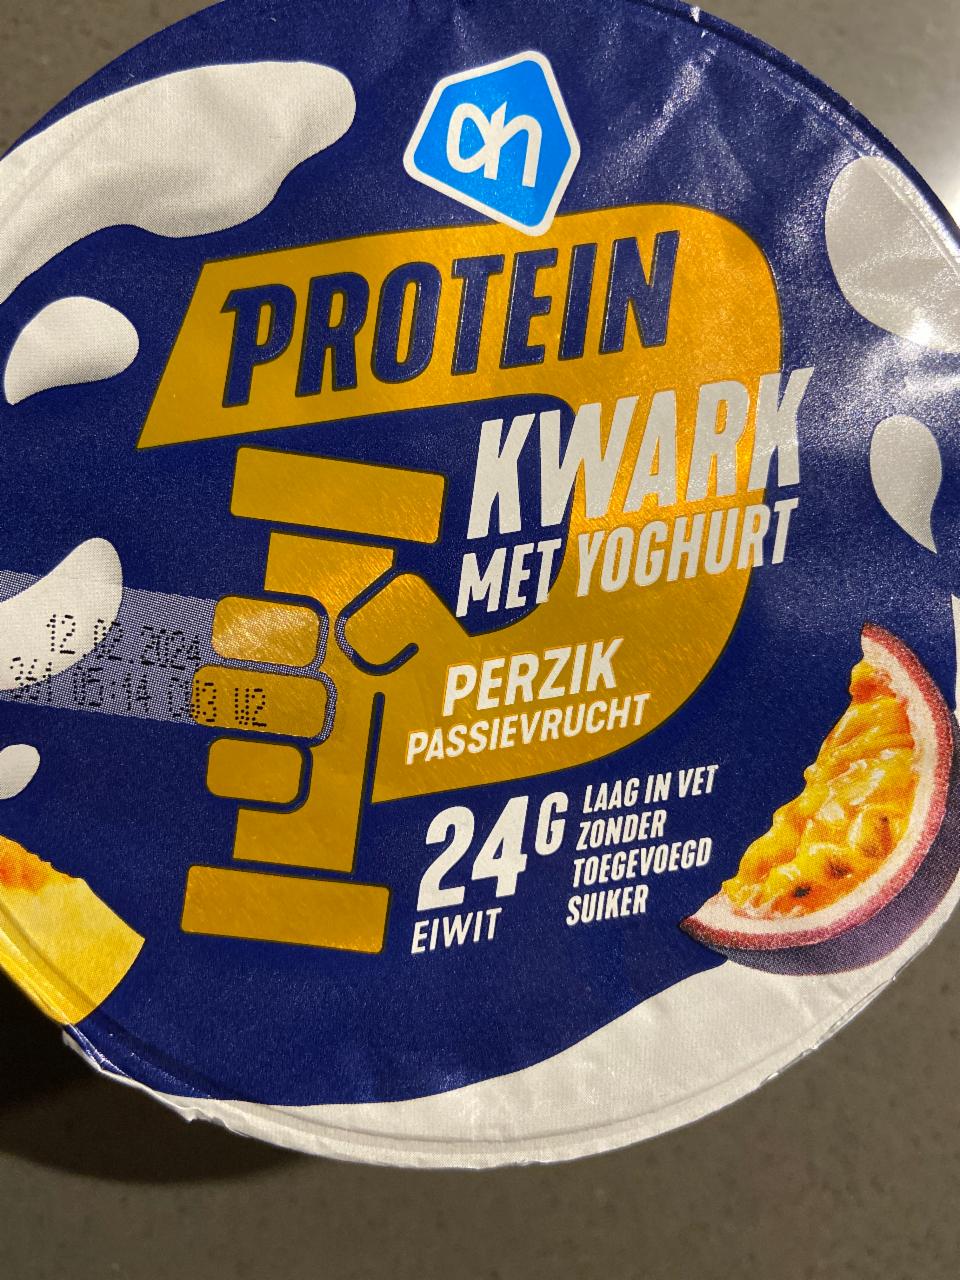 Fotografie - Protein kwark met yoghurt Perzik Passievrucht Albert Heijn